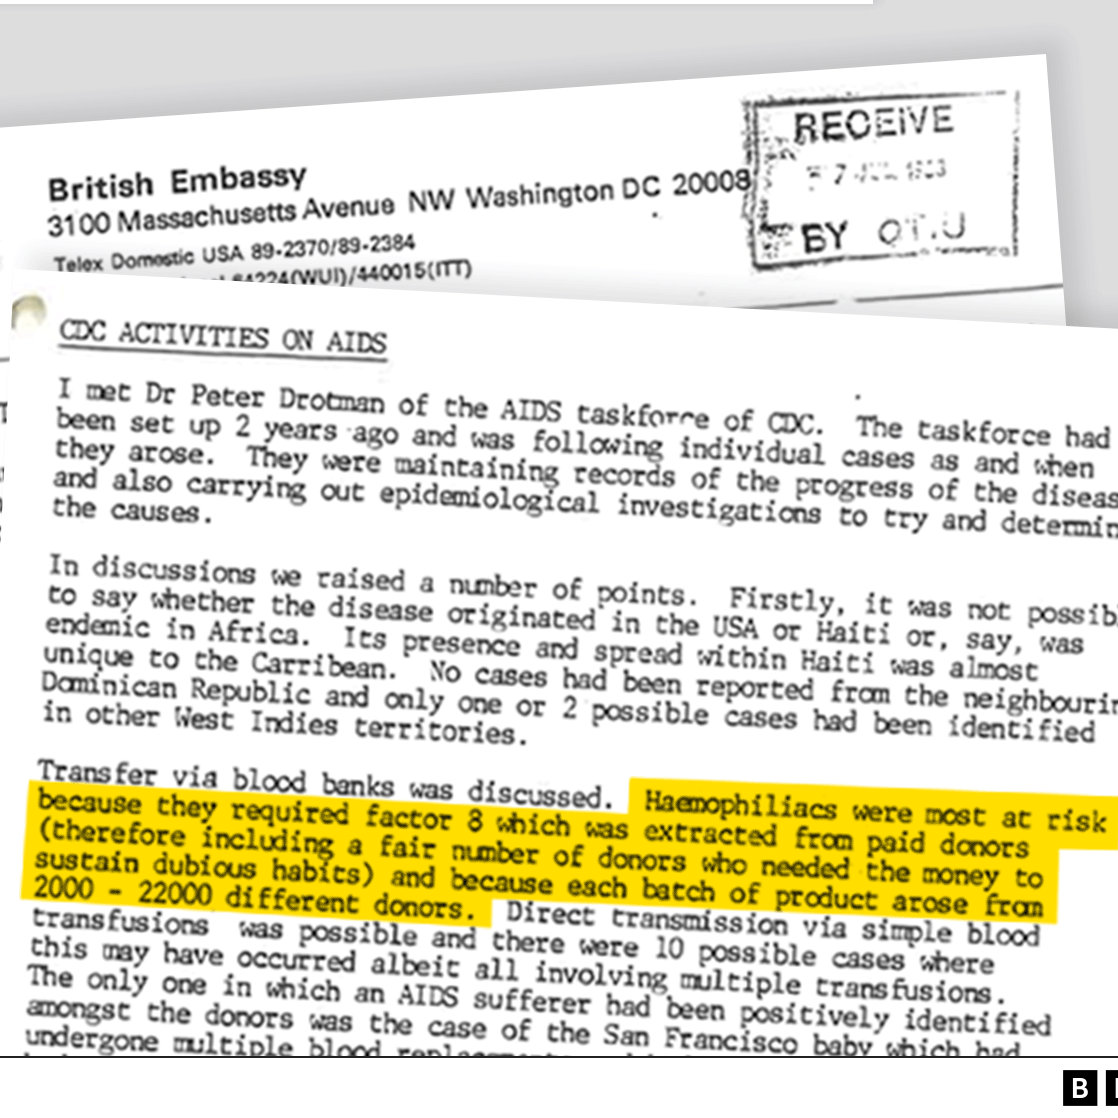 Extracto de la carta de un funcionario de la embajada de Reino Unido que describe su conversación con un representante del grupo de trabajo sobre el sida de los Centros para el Control de Enfermedades de EE.UU.